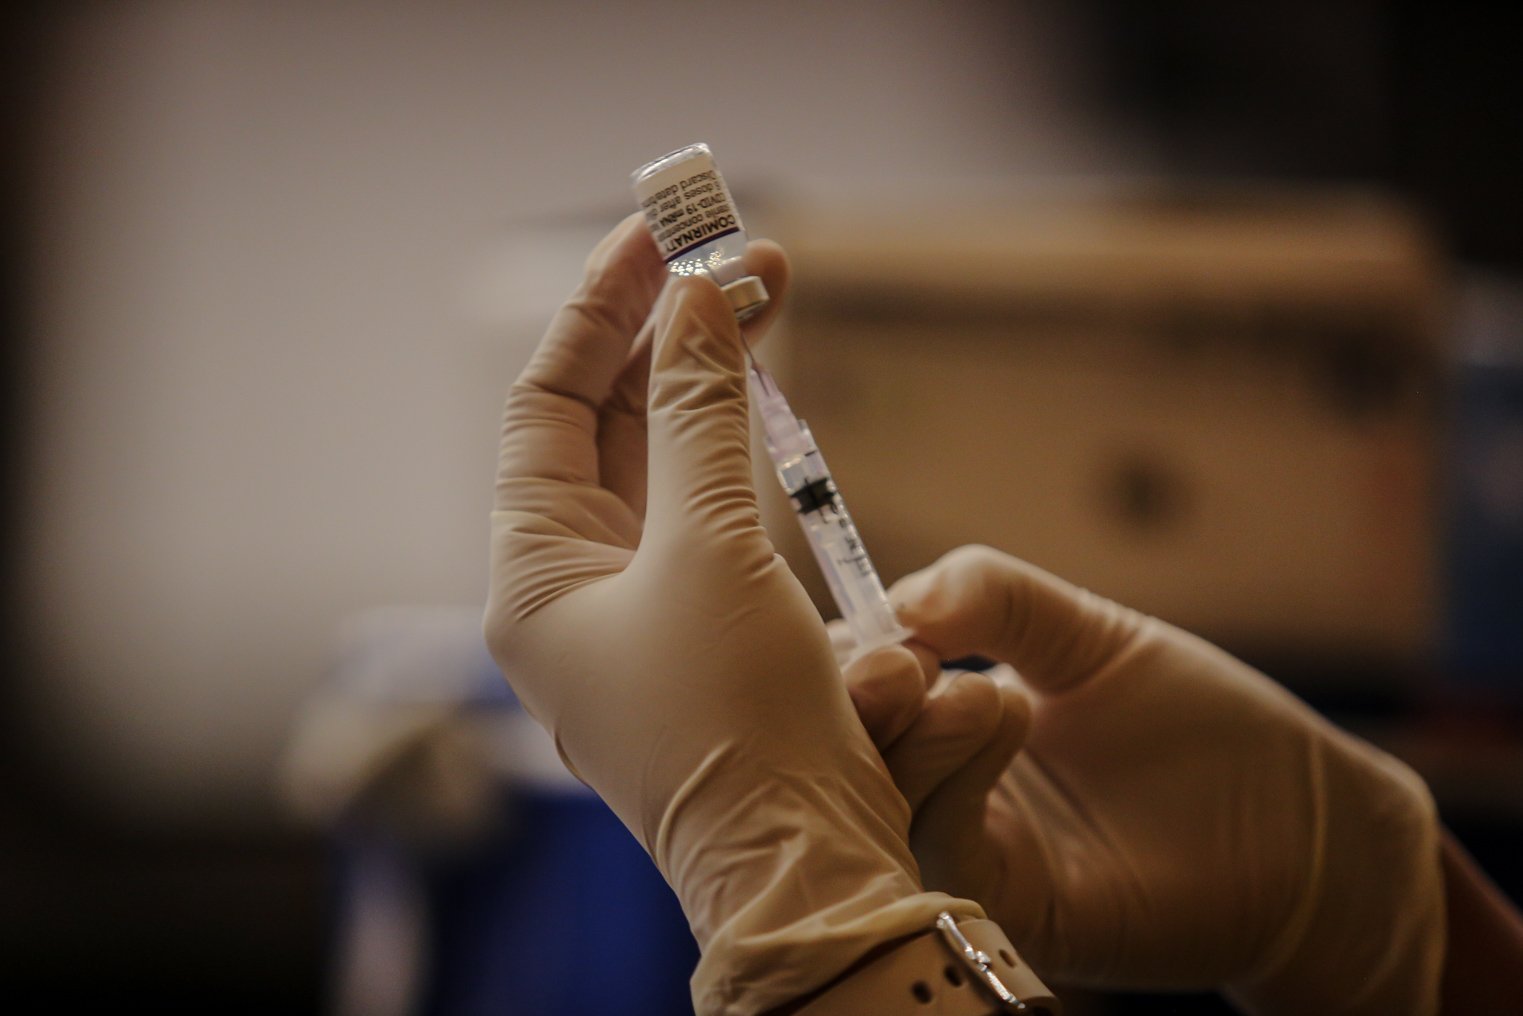 Petugas memasukan vaksin booster saat penyuntikan vaksin di Mal Kota Kasablanka, Jakarta, Rabu (26/1/2022). Vaksin Booster yang disediakan adalah vaksin jenis Pfizer, berlaku bagi peserta yang sudah vaksin lengkap hingga dosis ke-2 dengan jenis vaksin Sinovac atau AstraZeneca, telah menerima tiket vaksin ke-3 pada aplikasi PeduliLindungi, dan berusia 18 tahun ke atas.